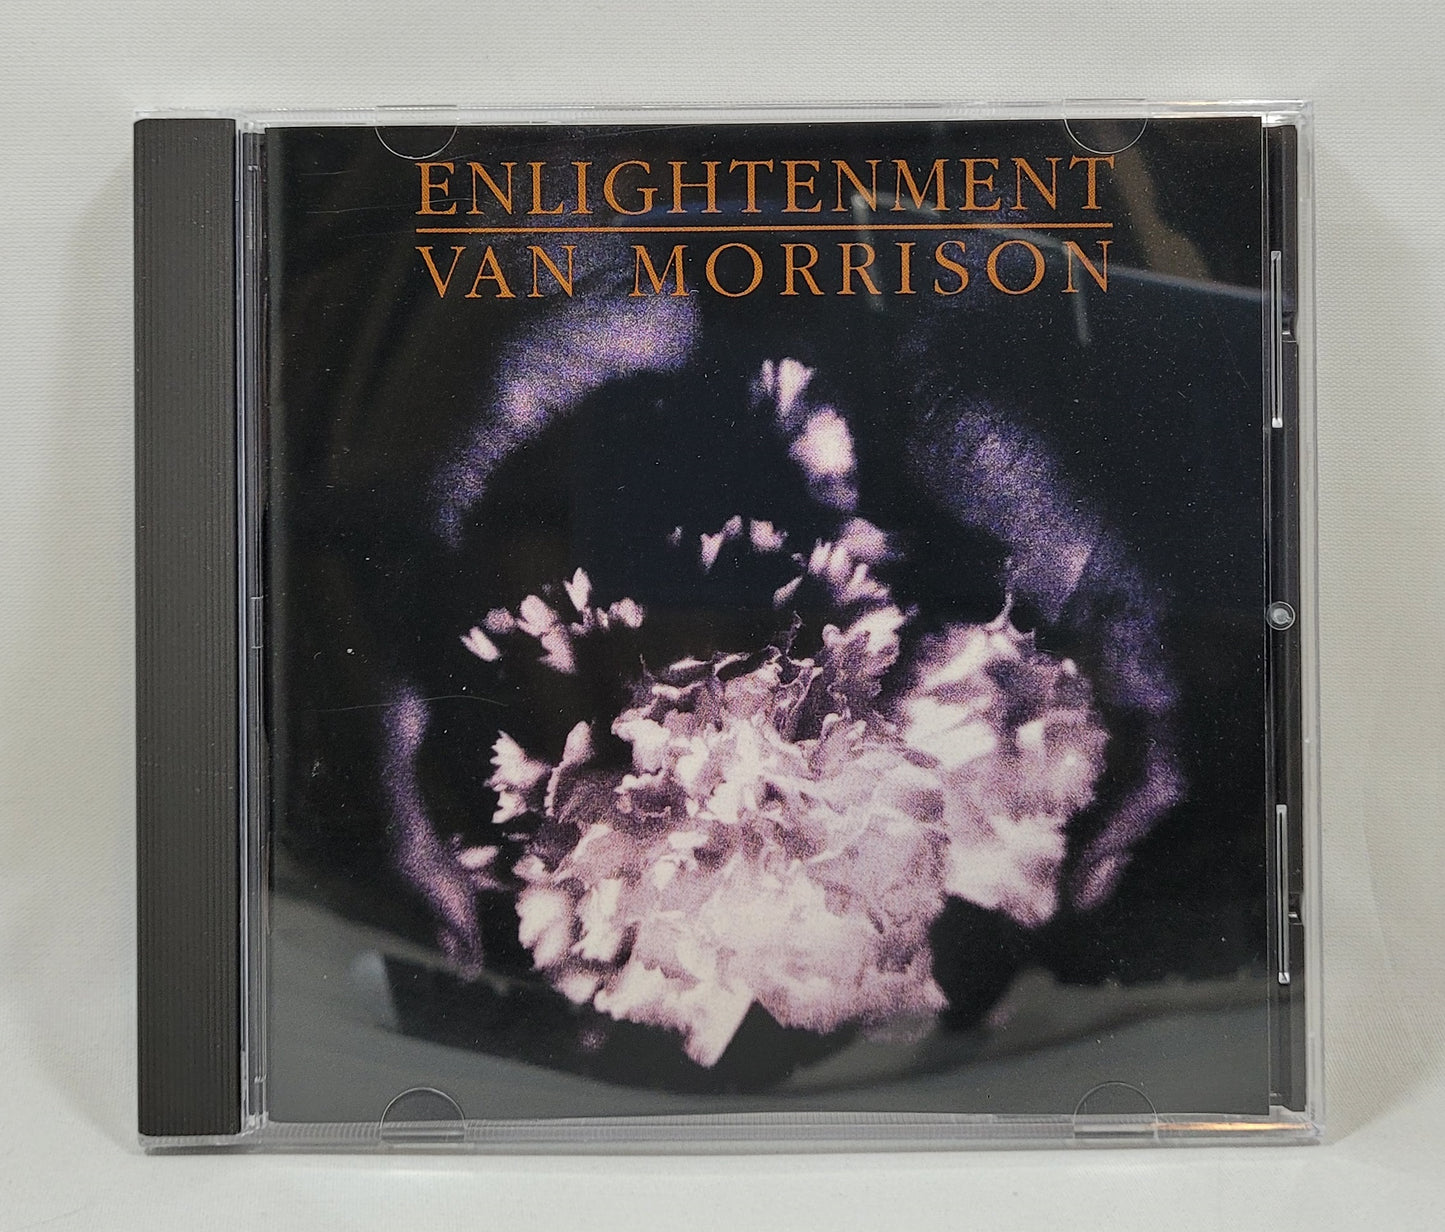 Van Morrison - Enlightenment [Reissue] [Used CD]